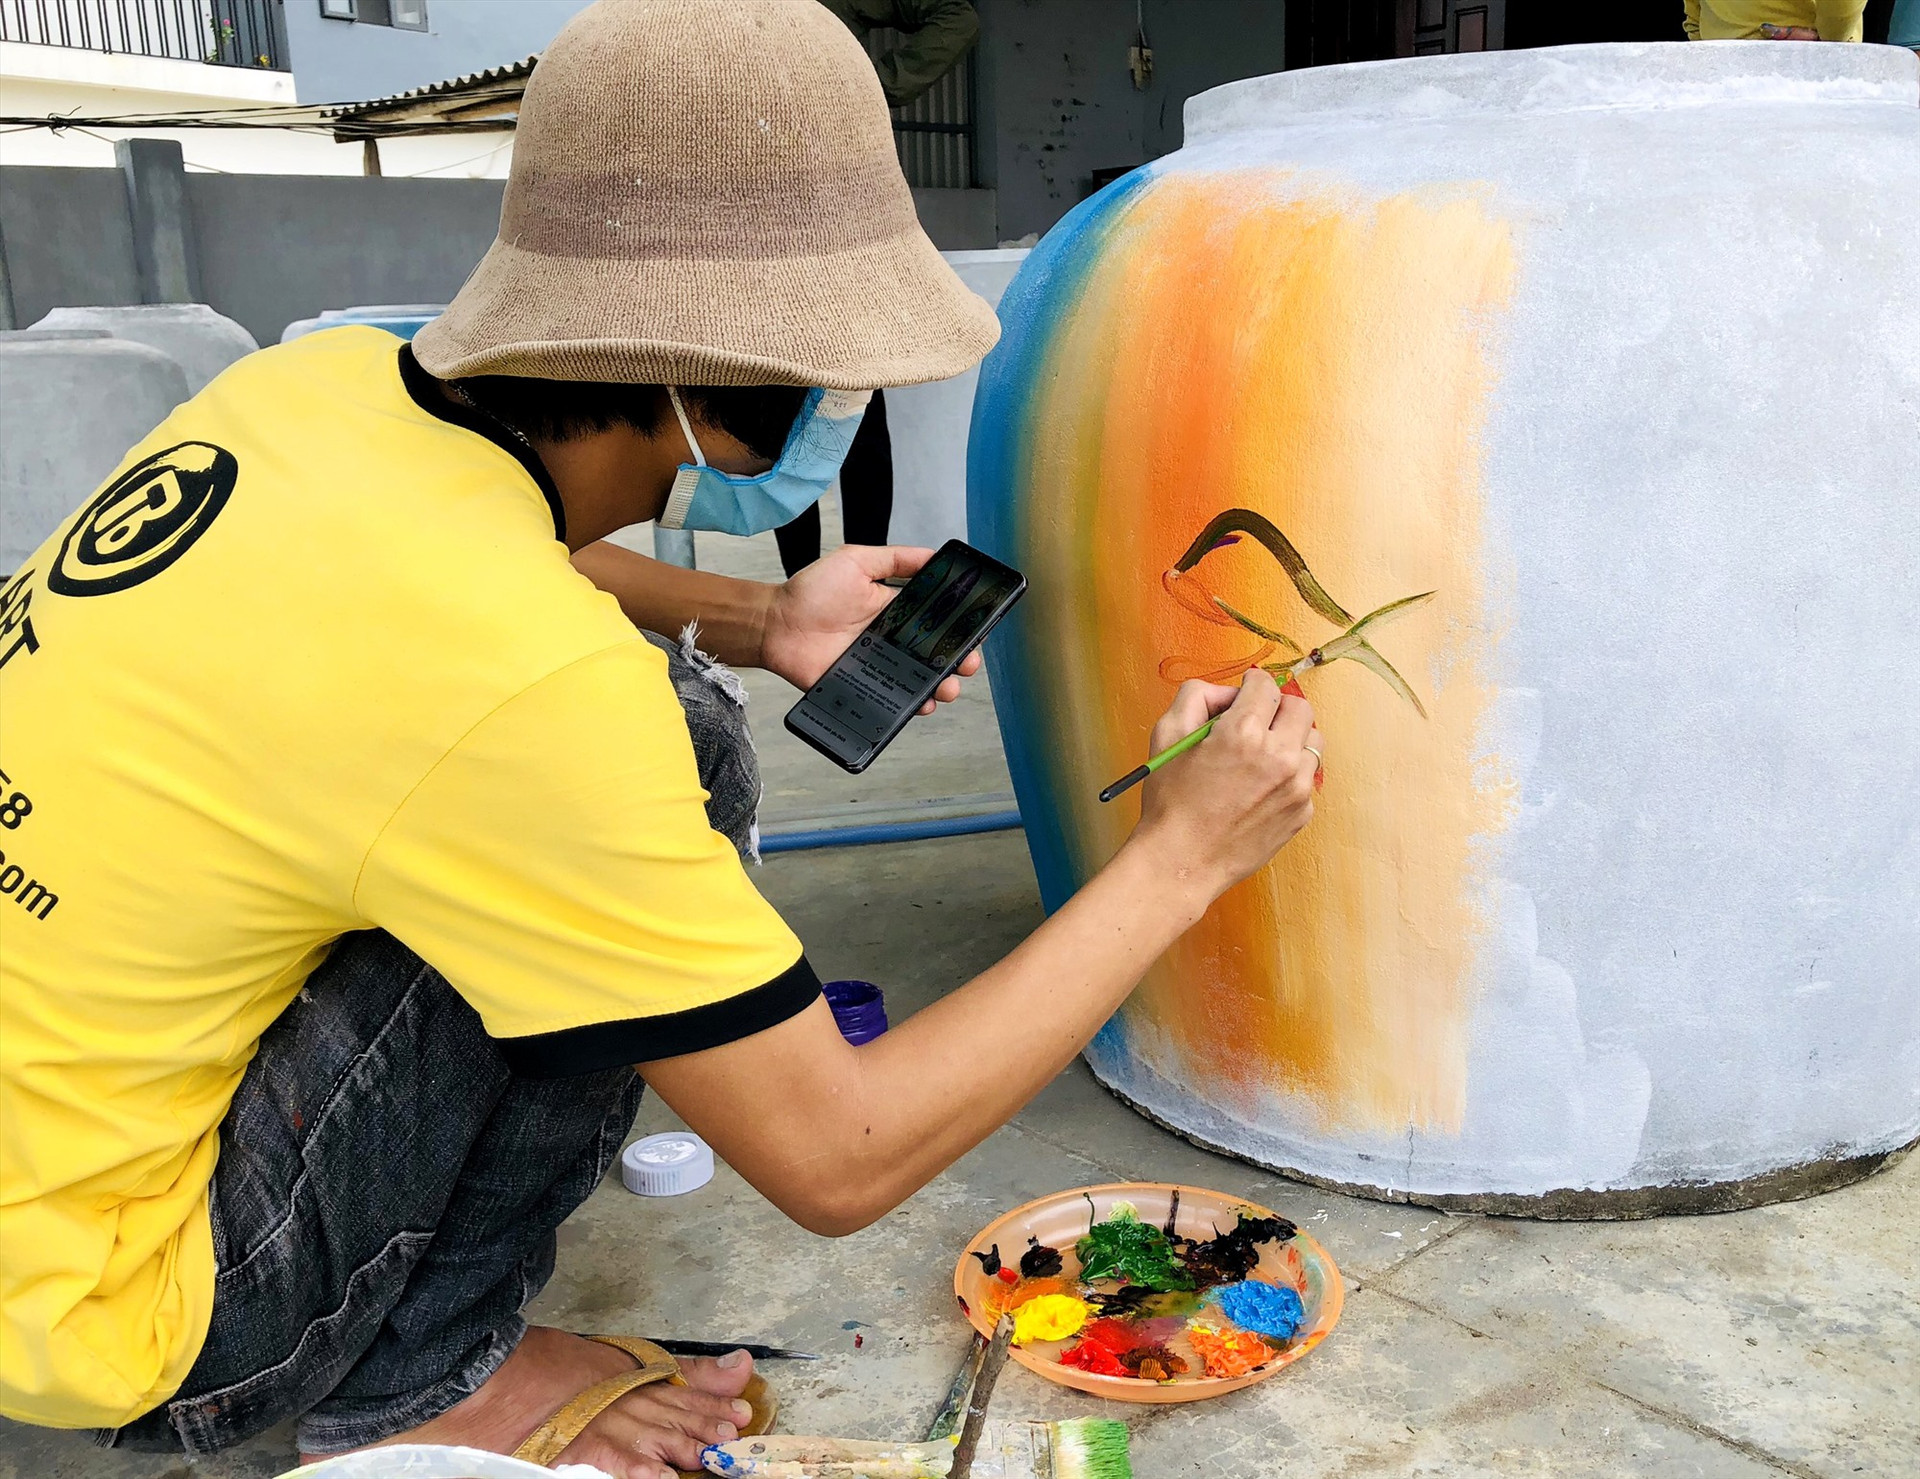 Người dân có kỹ năng hội họa trong thôn tham gia vẽ những bức tranh về đời sống, sinh hoạt ngư dân miền biển lên bề mặt chum. Ảnh: Q.S